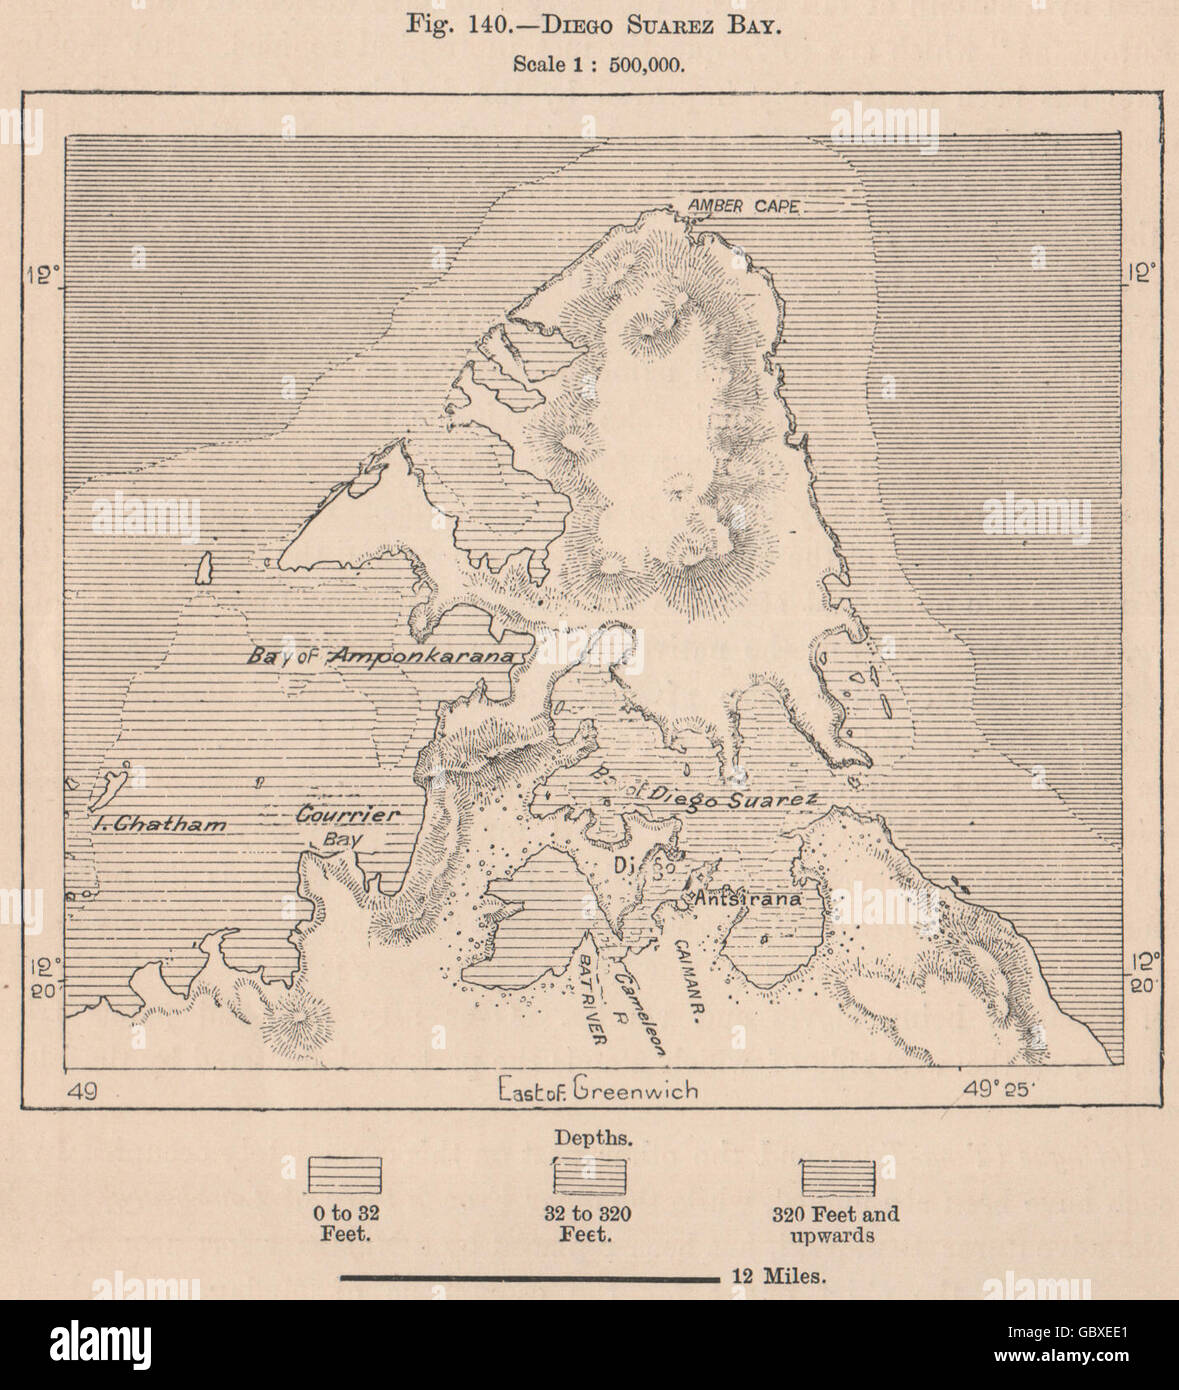 Antsiranana Bay. Madagascar, 1885 antique map Stock Photo